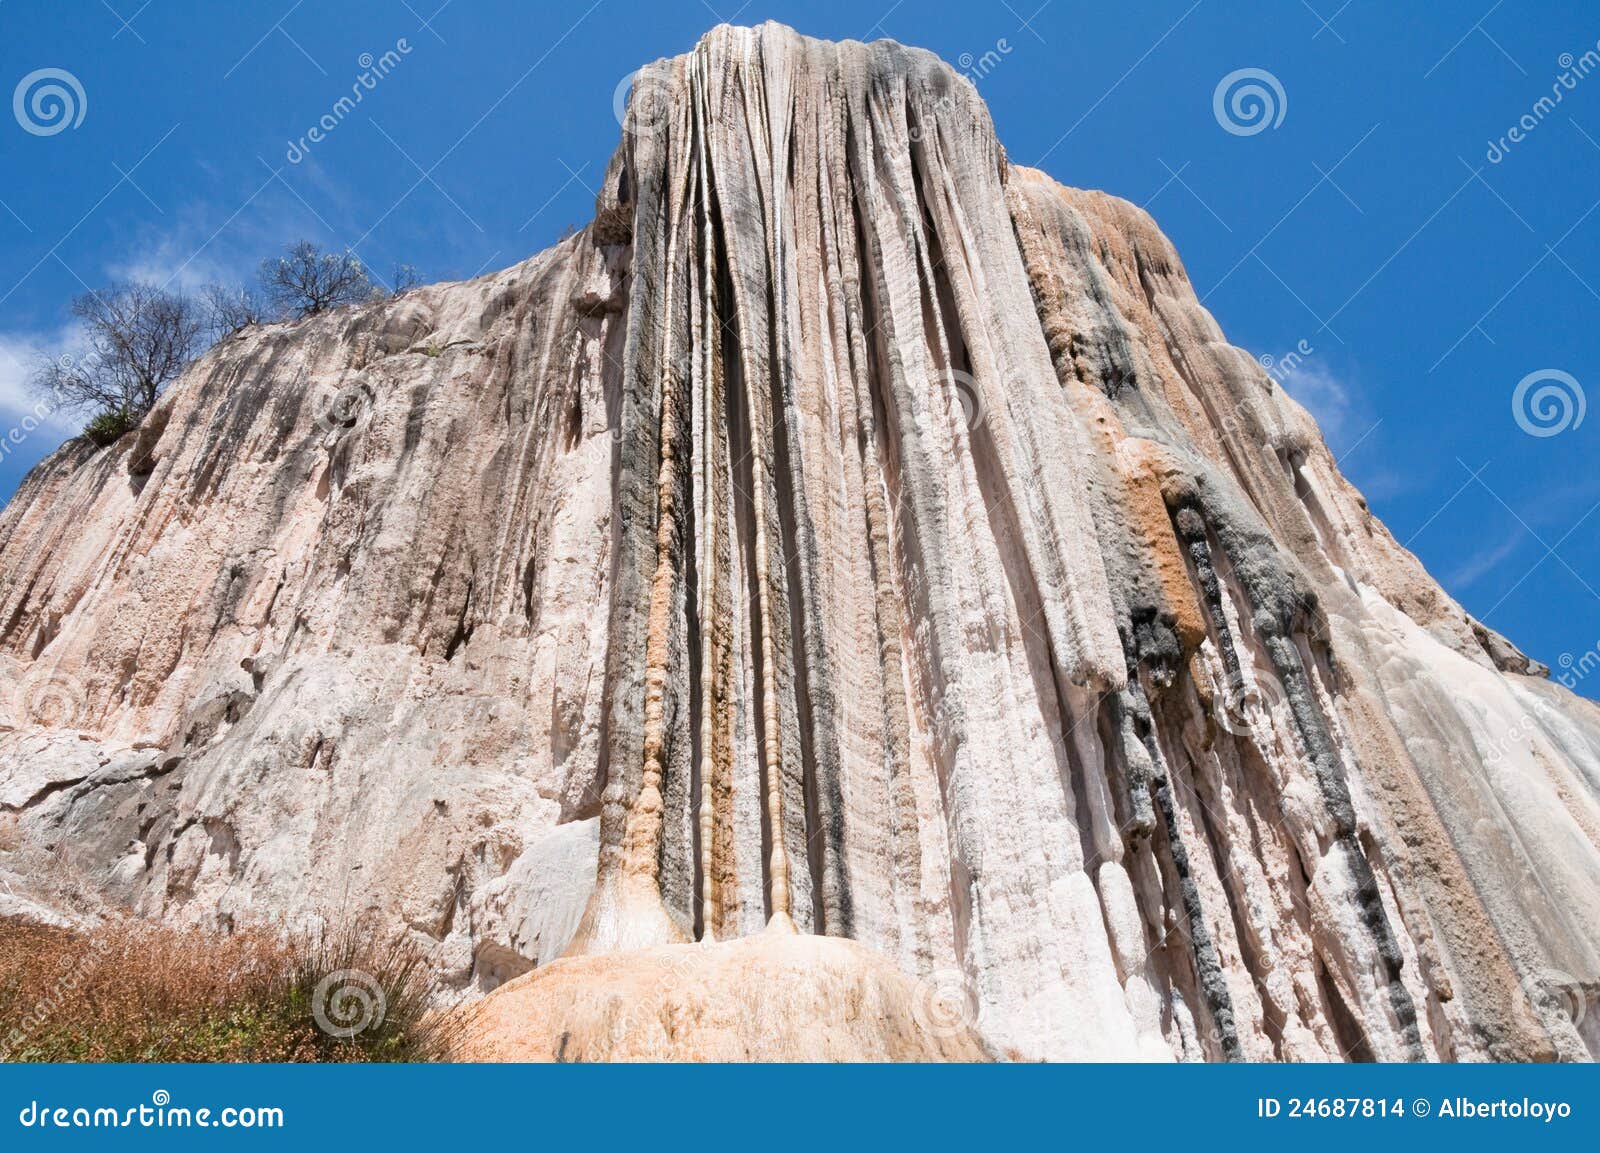 hierve el agua, petrified waterfall in oaxaca